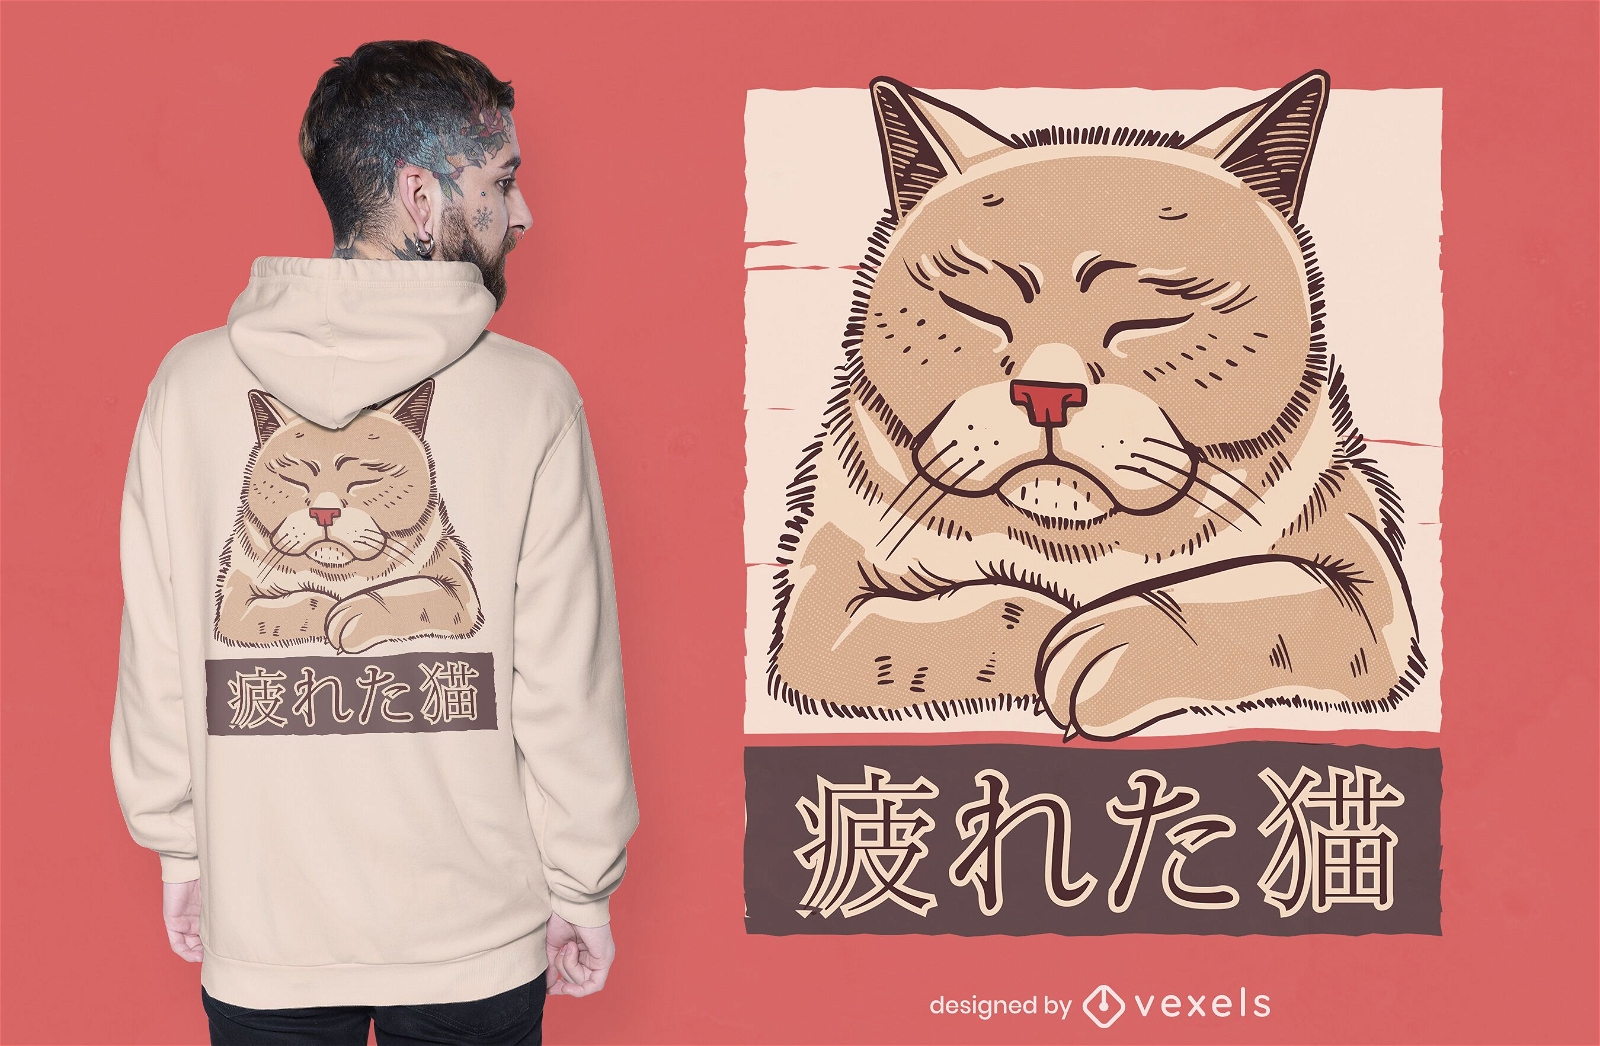 Tired cat t-shirt design